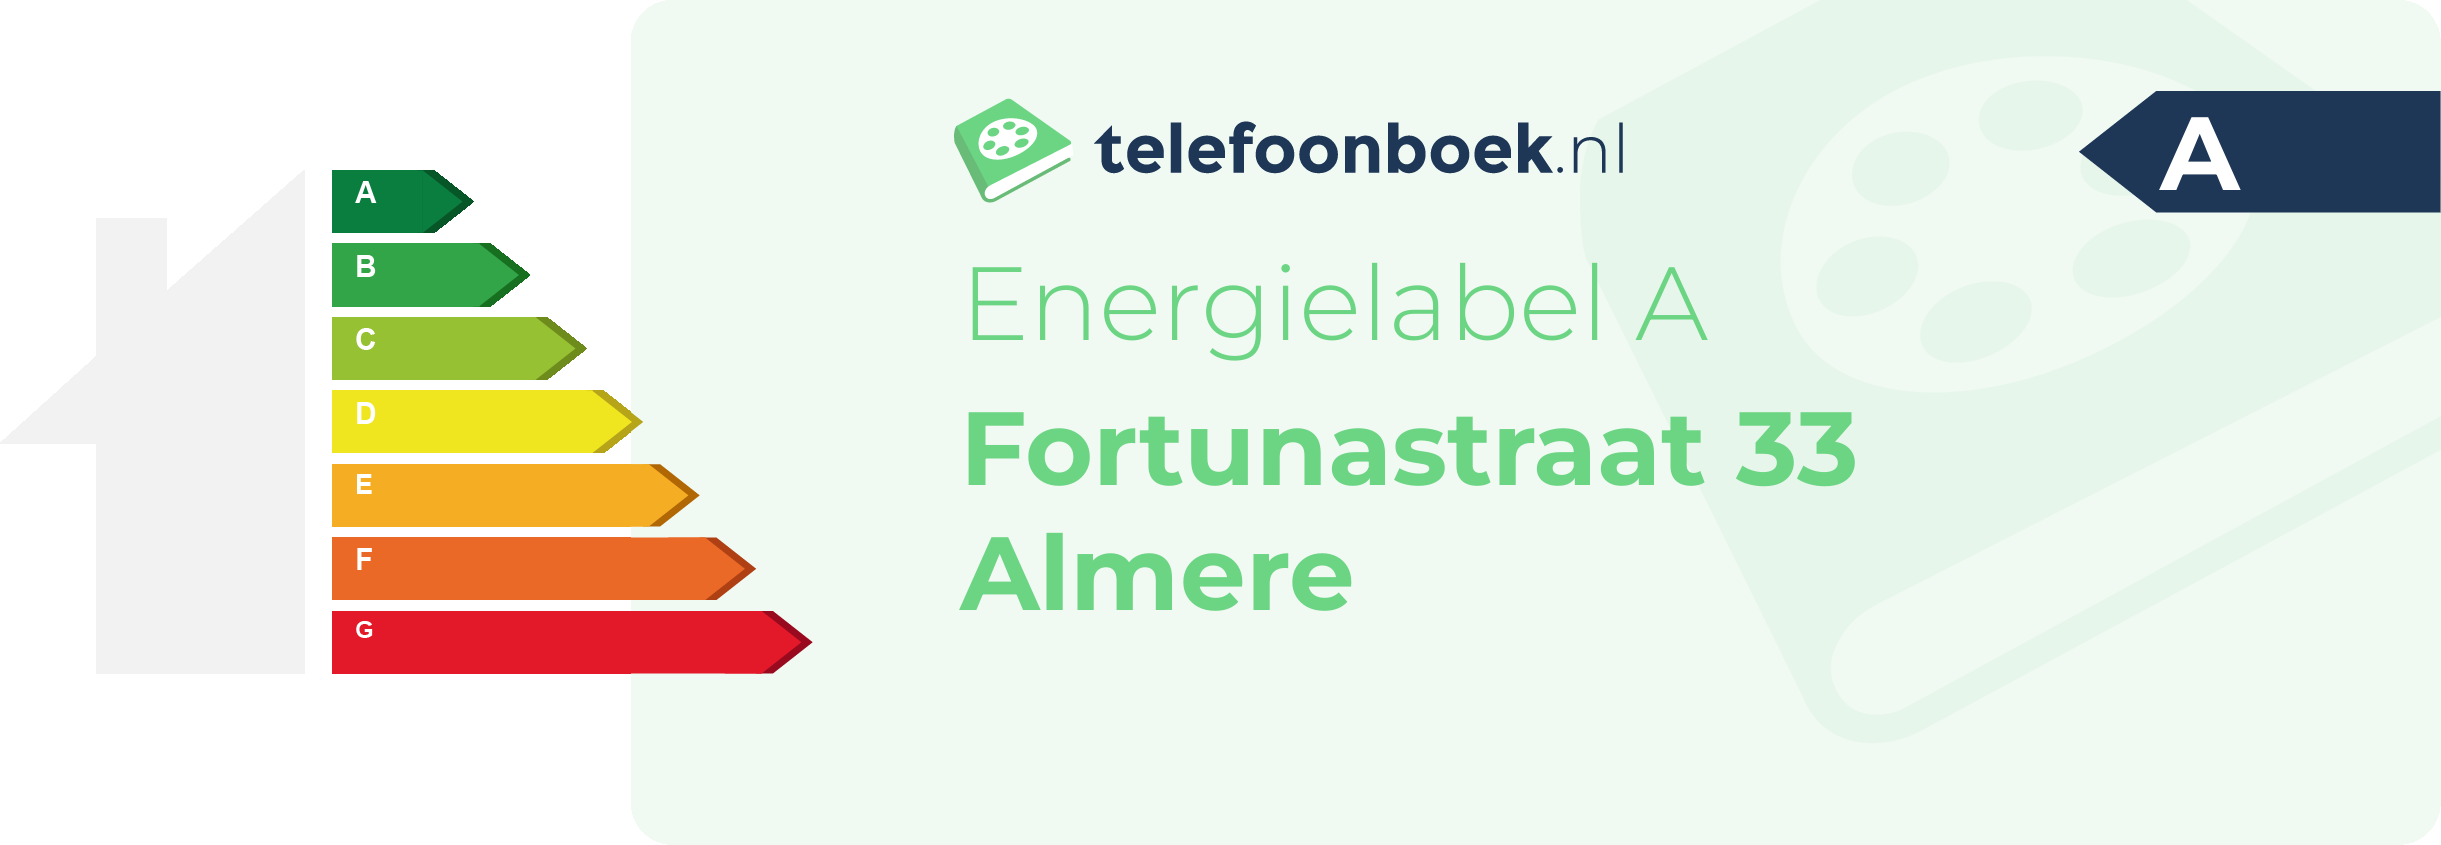 Energielabel Fortunastraat 33 Almere